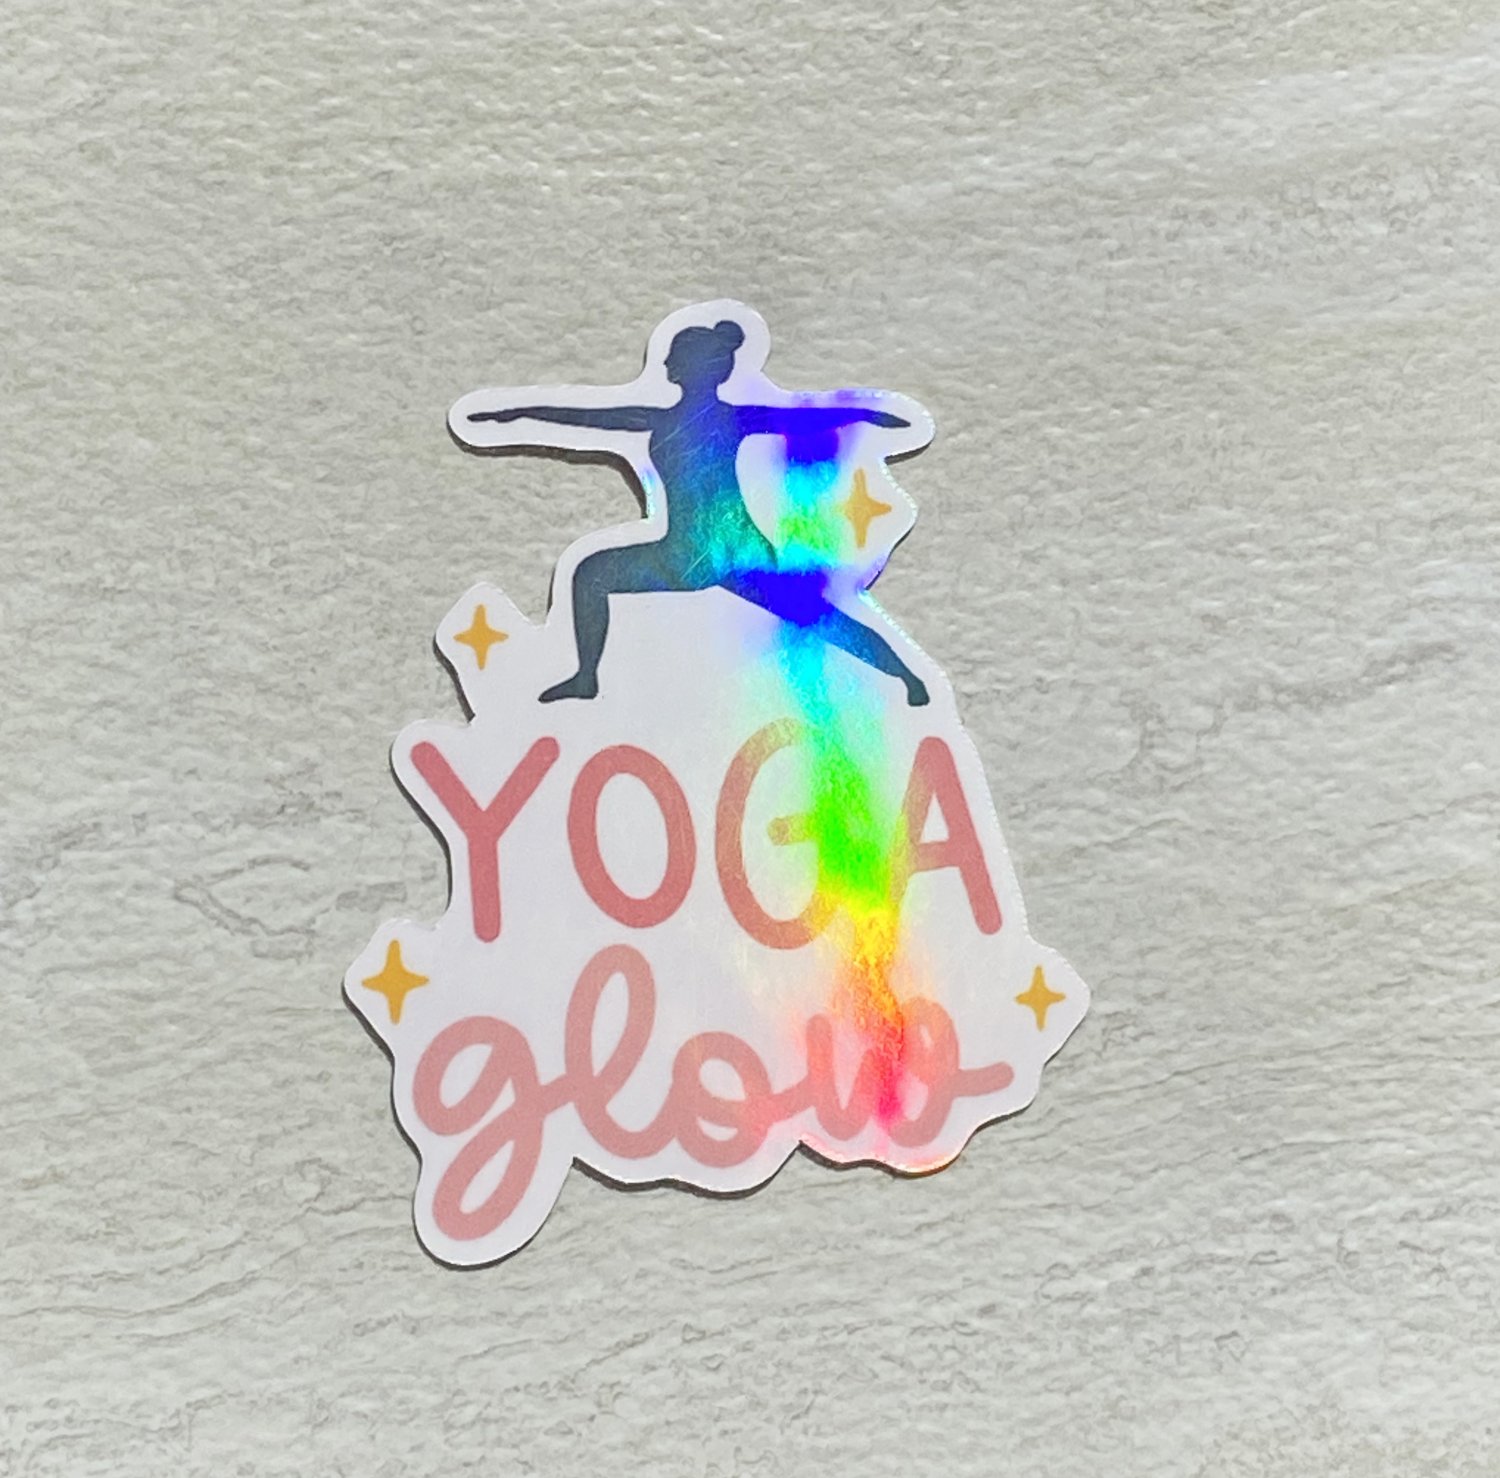 Yoga Glow Waterproof Die Cut Holographic Sticker